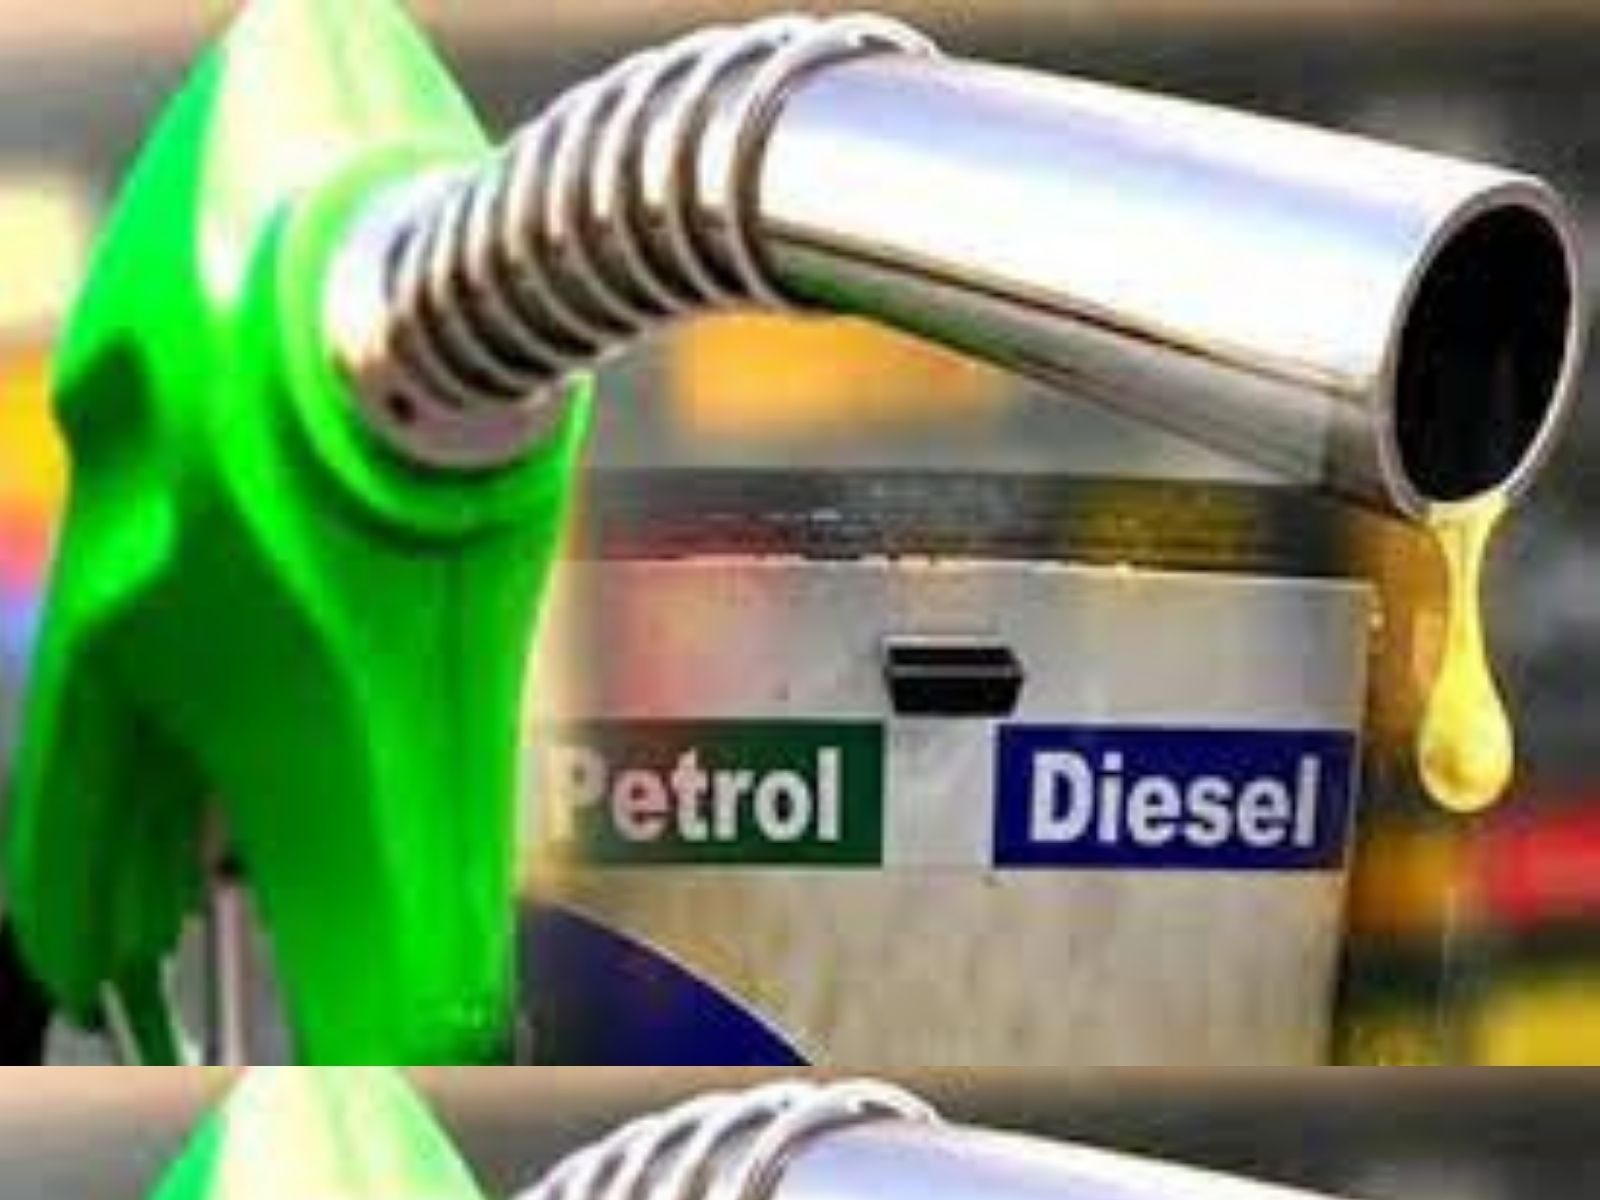  Petrol Diesel Prices: ਕੱਚੇ ਤੇਲ ਦੇ ਫਿਰ ਵਧੇ ਭਾਅ! ਜਾਣੋ ਆਪਣੇ ਸ਼ਹਿਰ ਵਿੱਚ ਪੈਟਰੋਲ-ਡੀਜ਼ਲ ਦੇ ਤਾਜ਼ਾ ਰੇਟ
